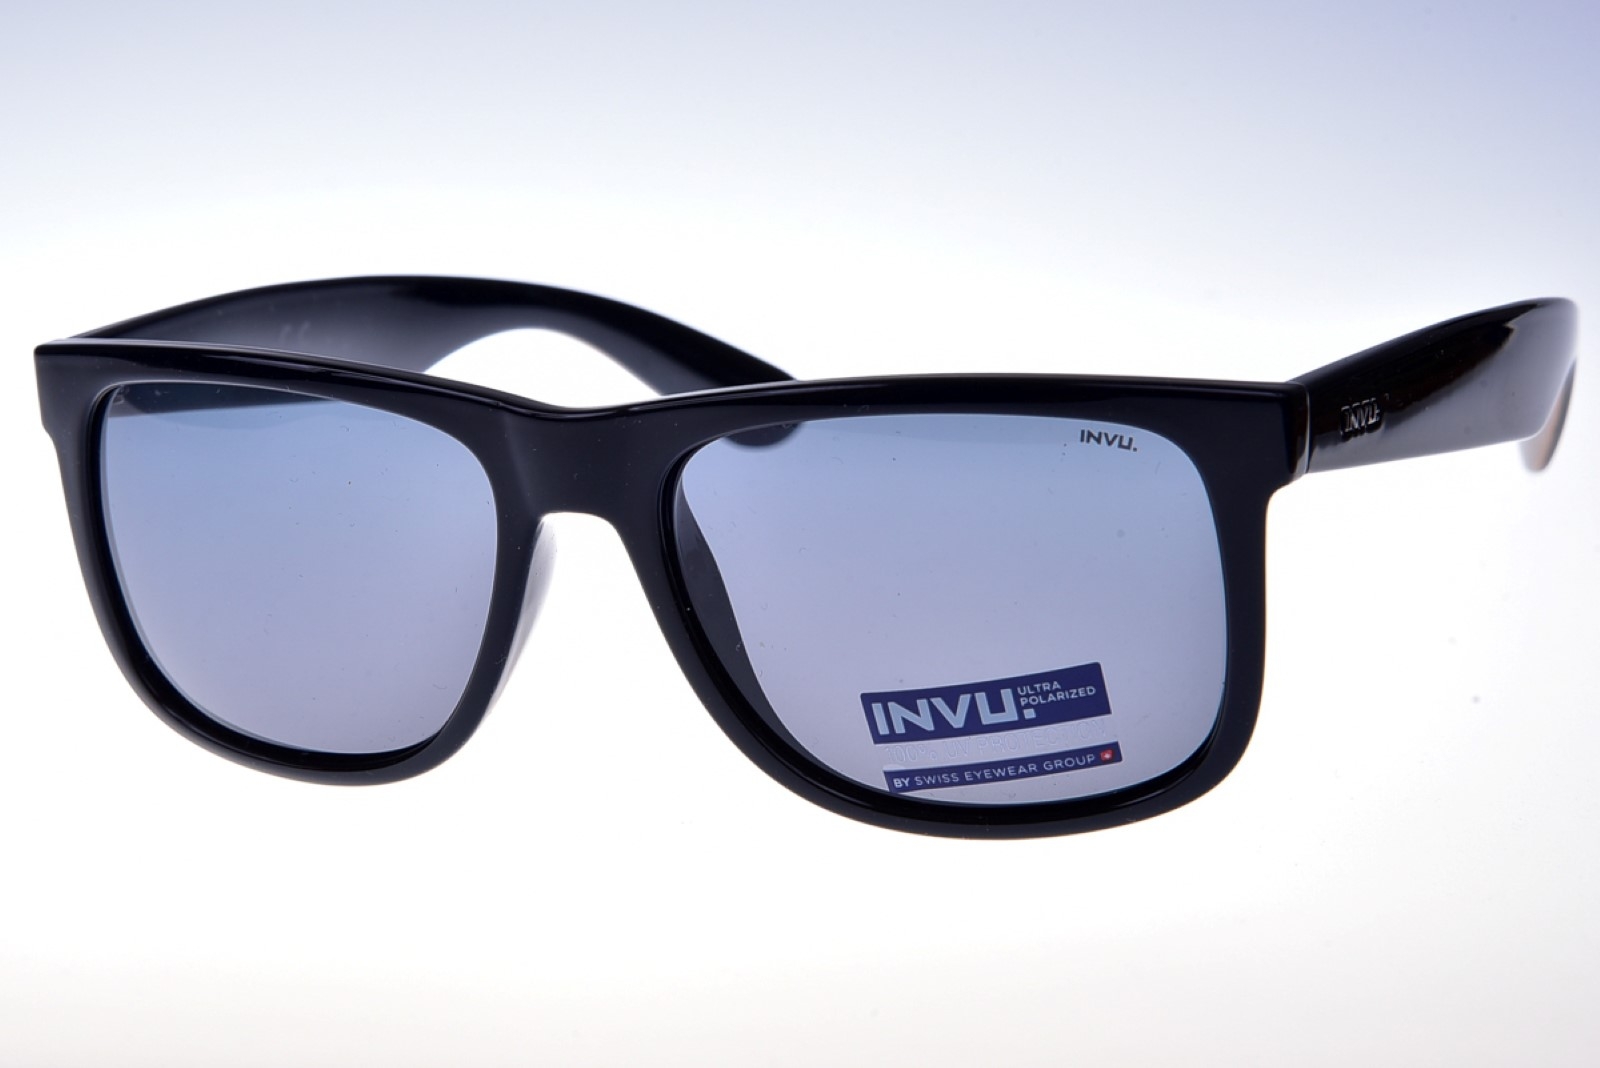 INVU. Classic B2719C - Pánske slnečné okuliare